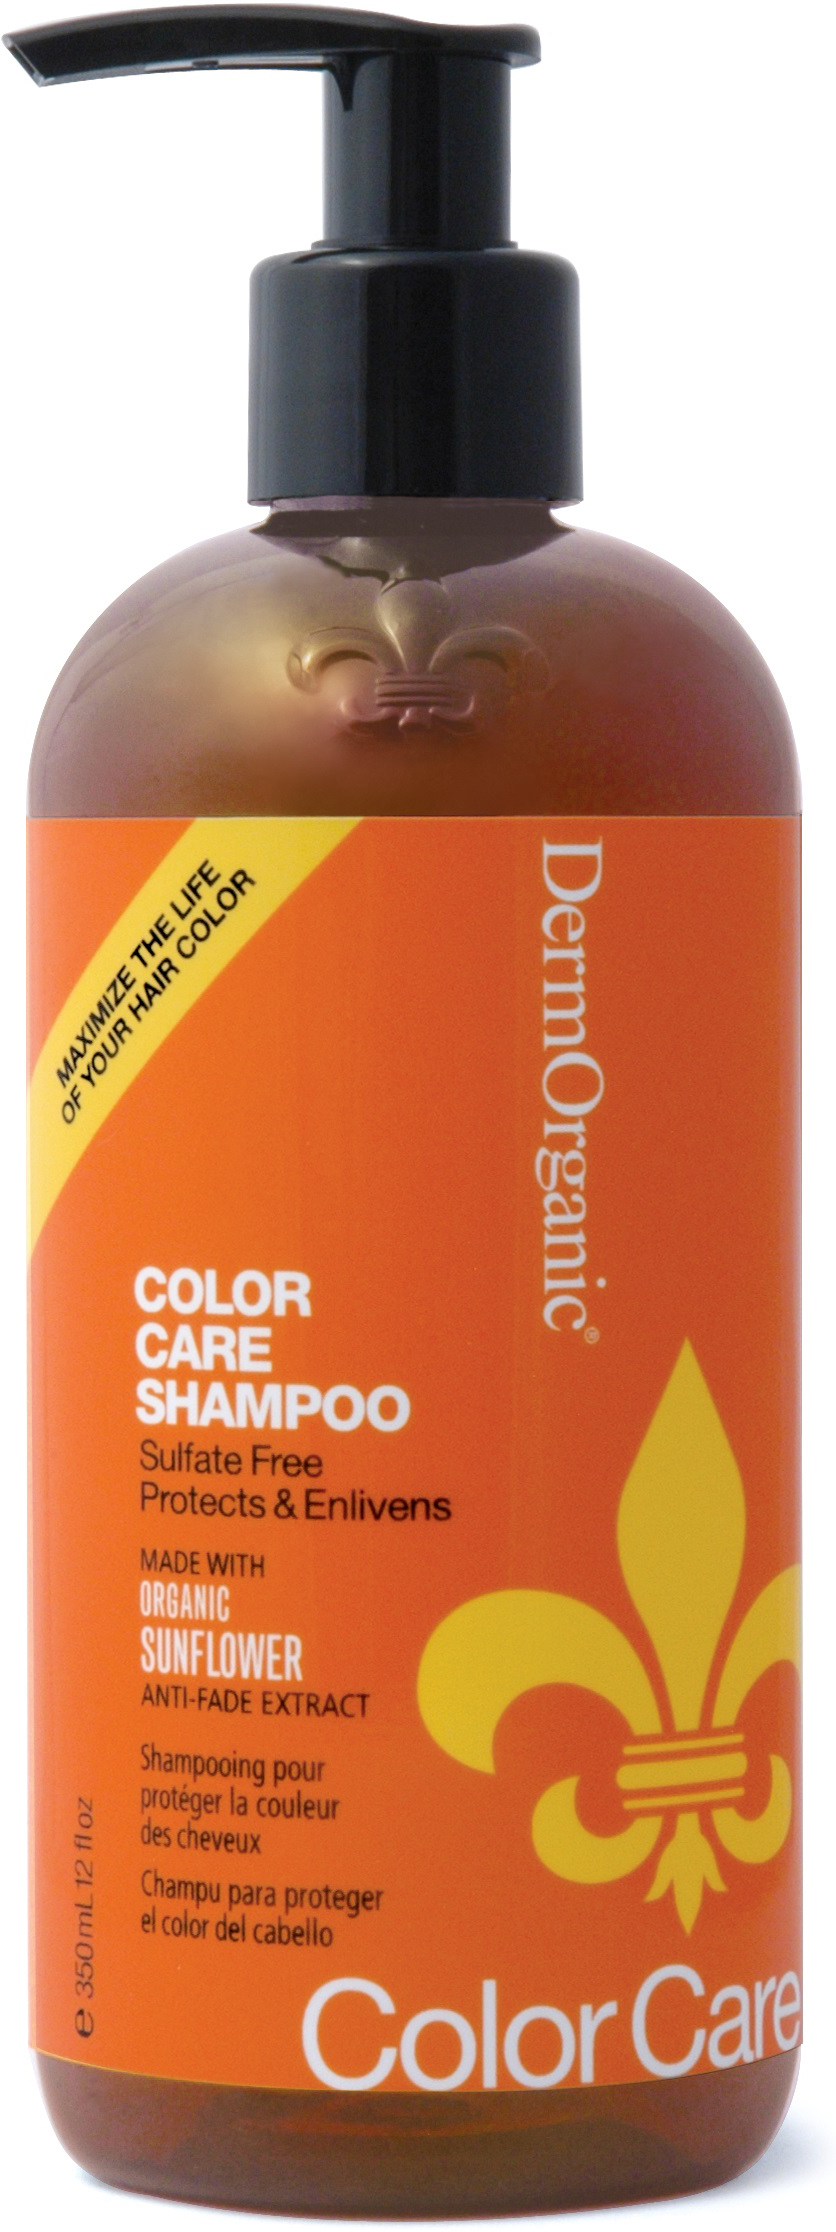 DermOrganic Daily Color Care Shampoo 70% Organic